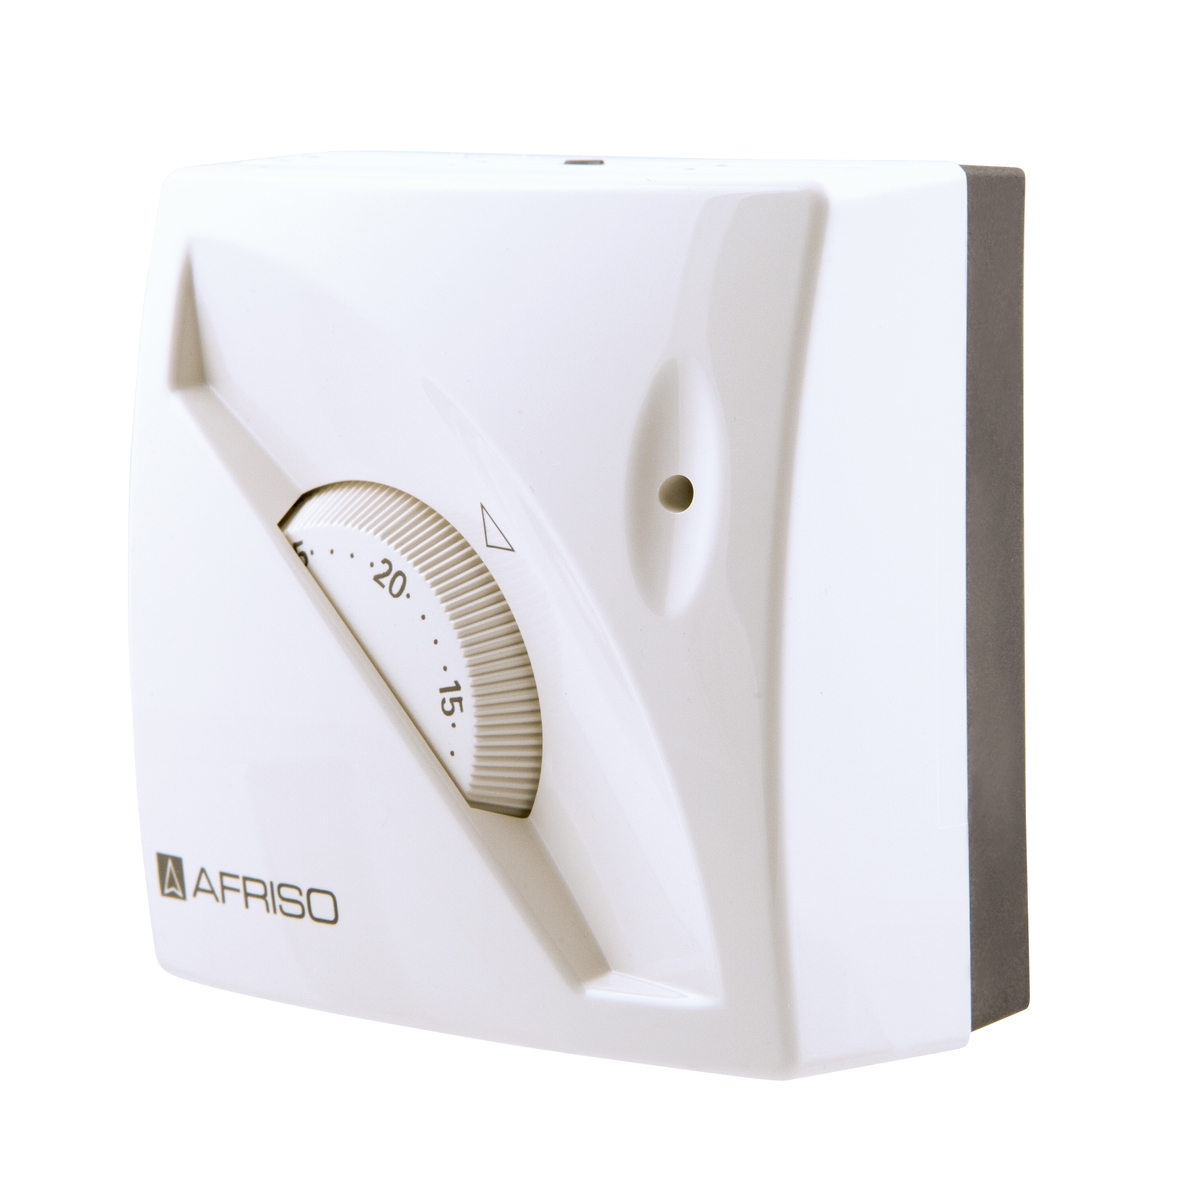 Pokojový termostat TA 03 - s LED indikací a přepínačem léto/zima - AFRISO.CZ